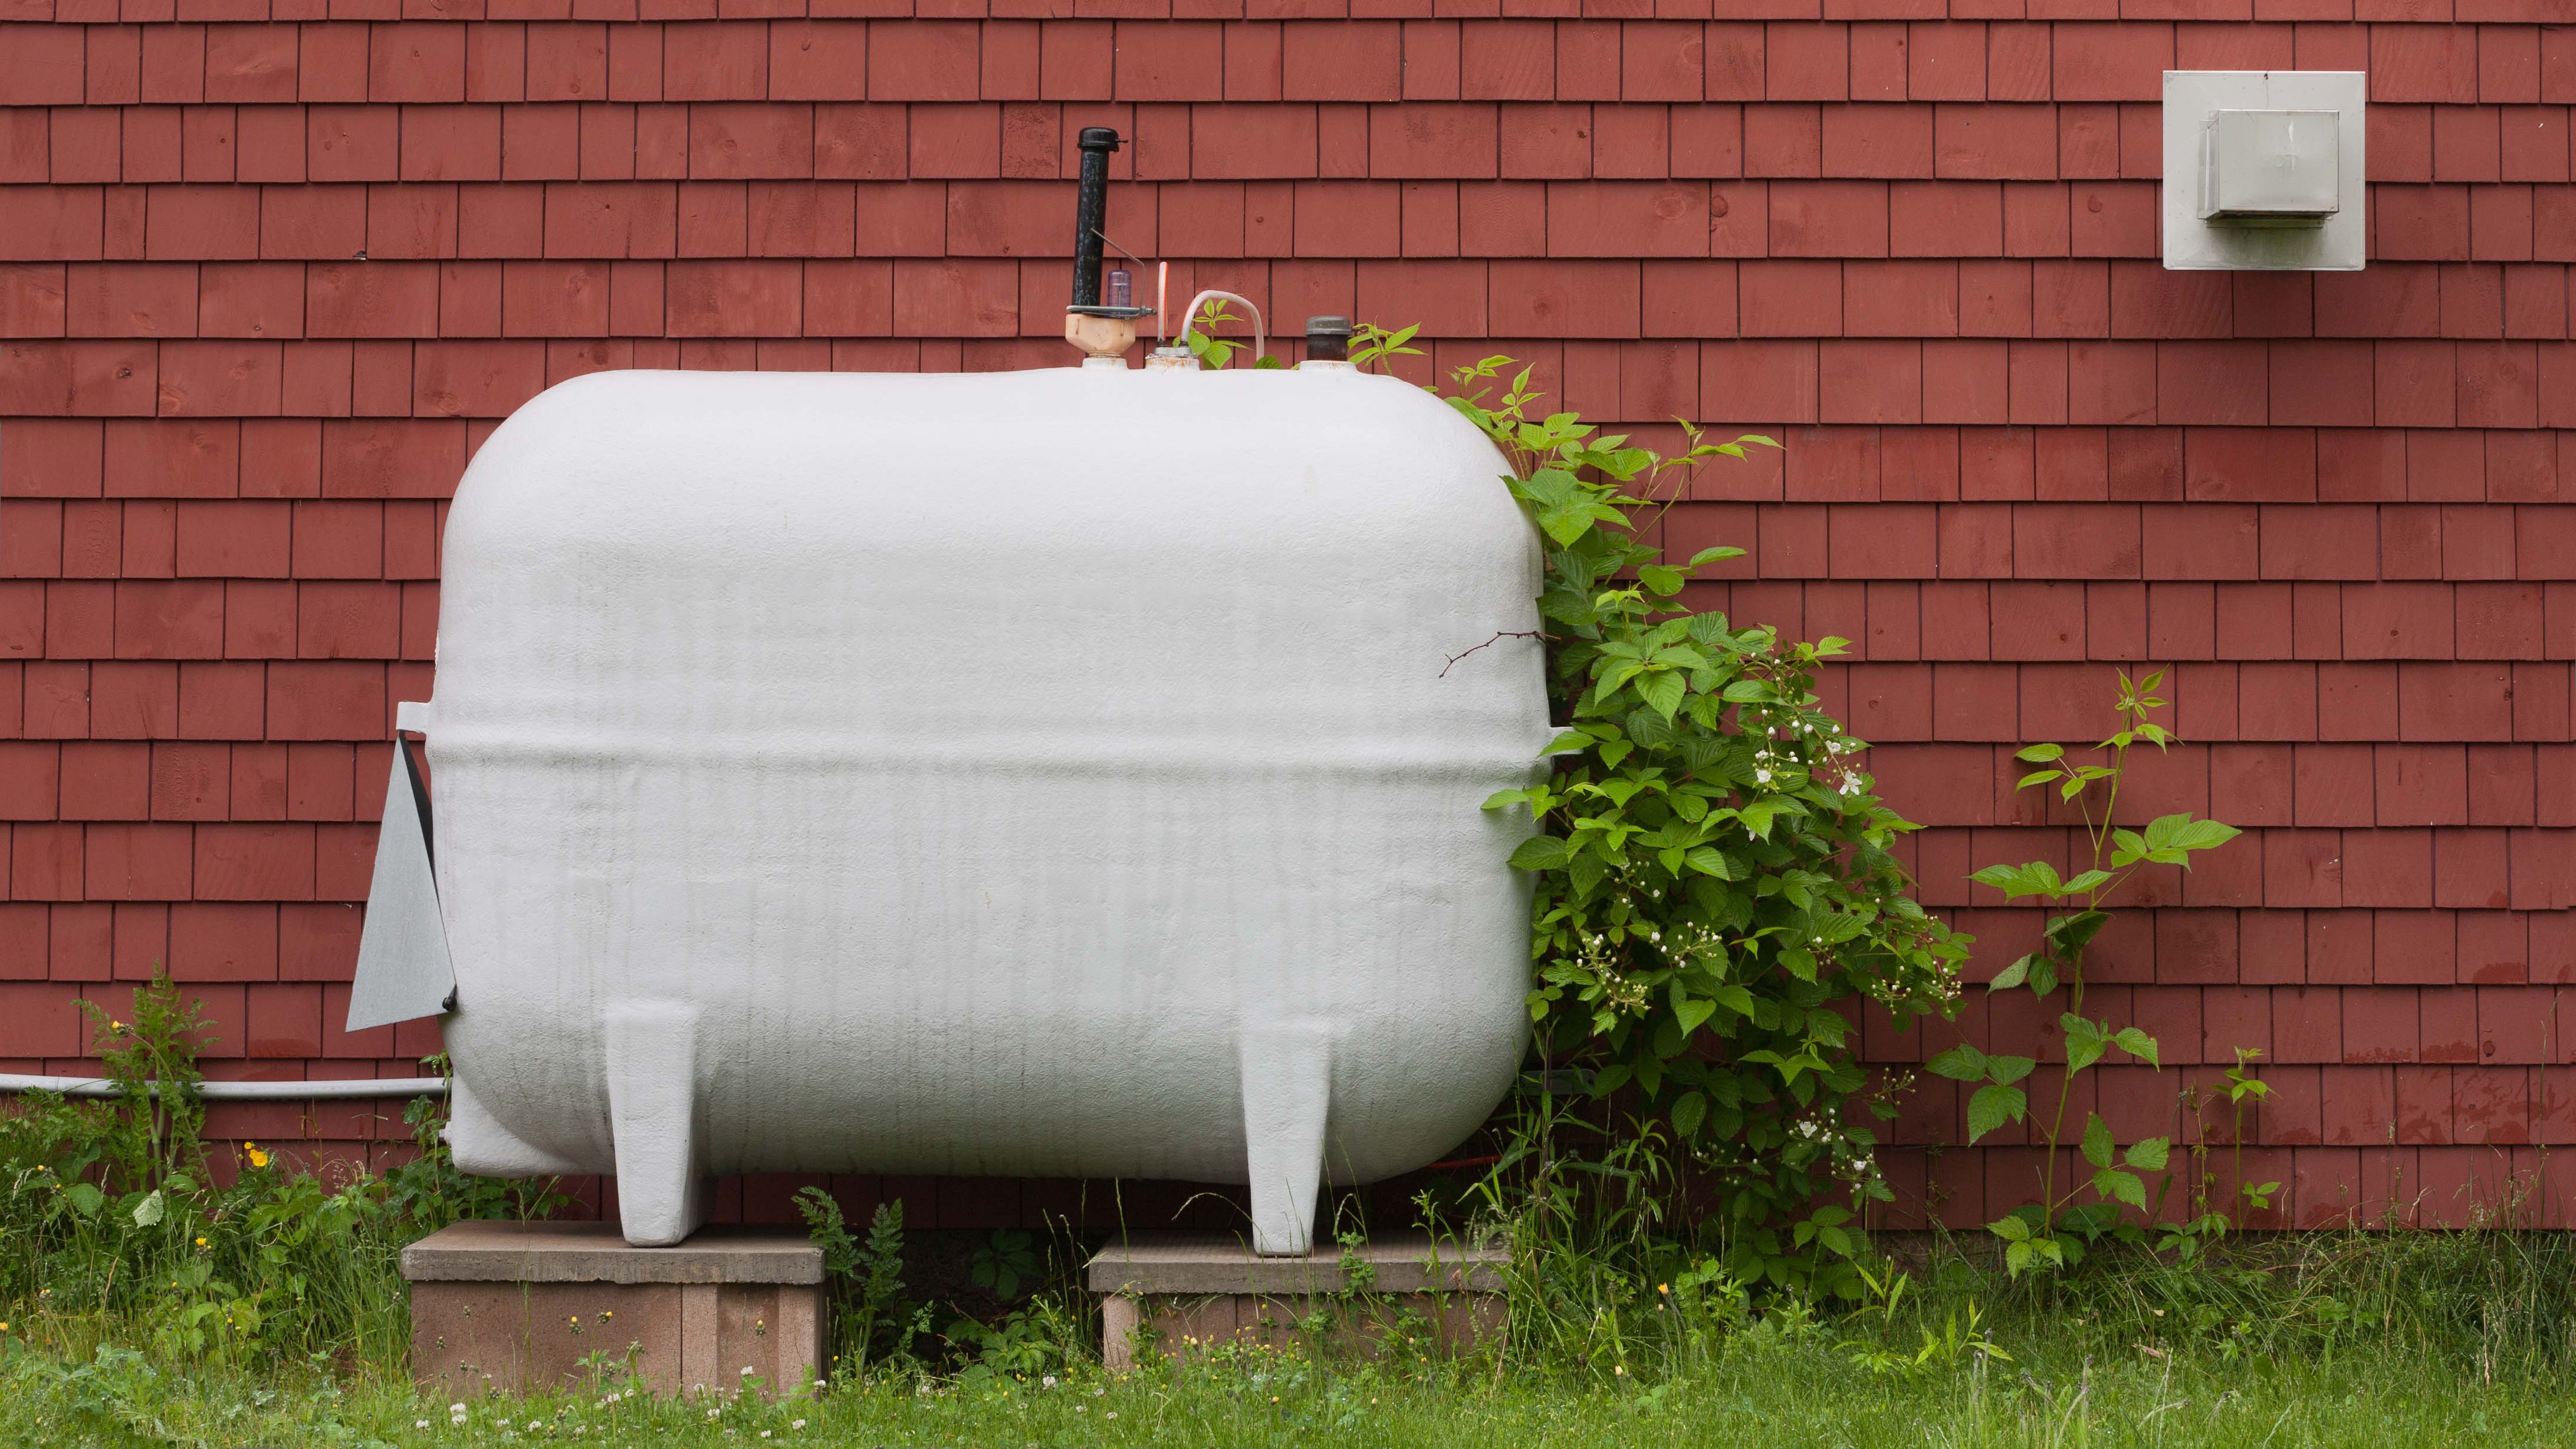 Outdoor water tank